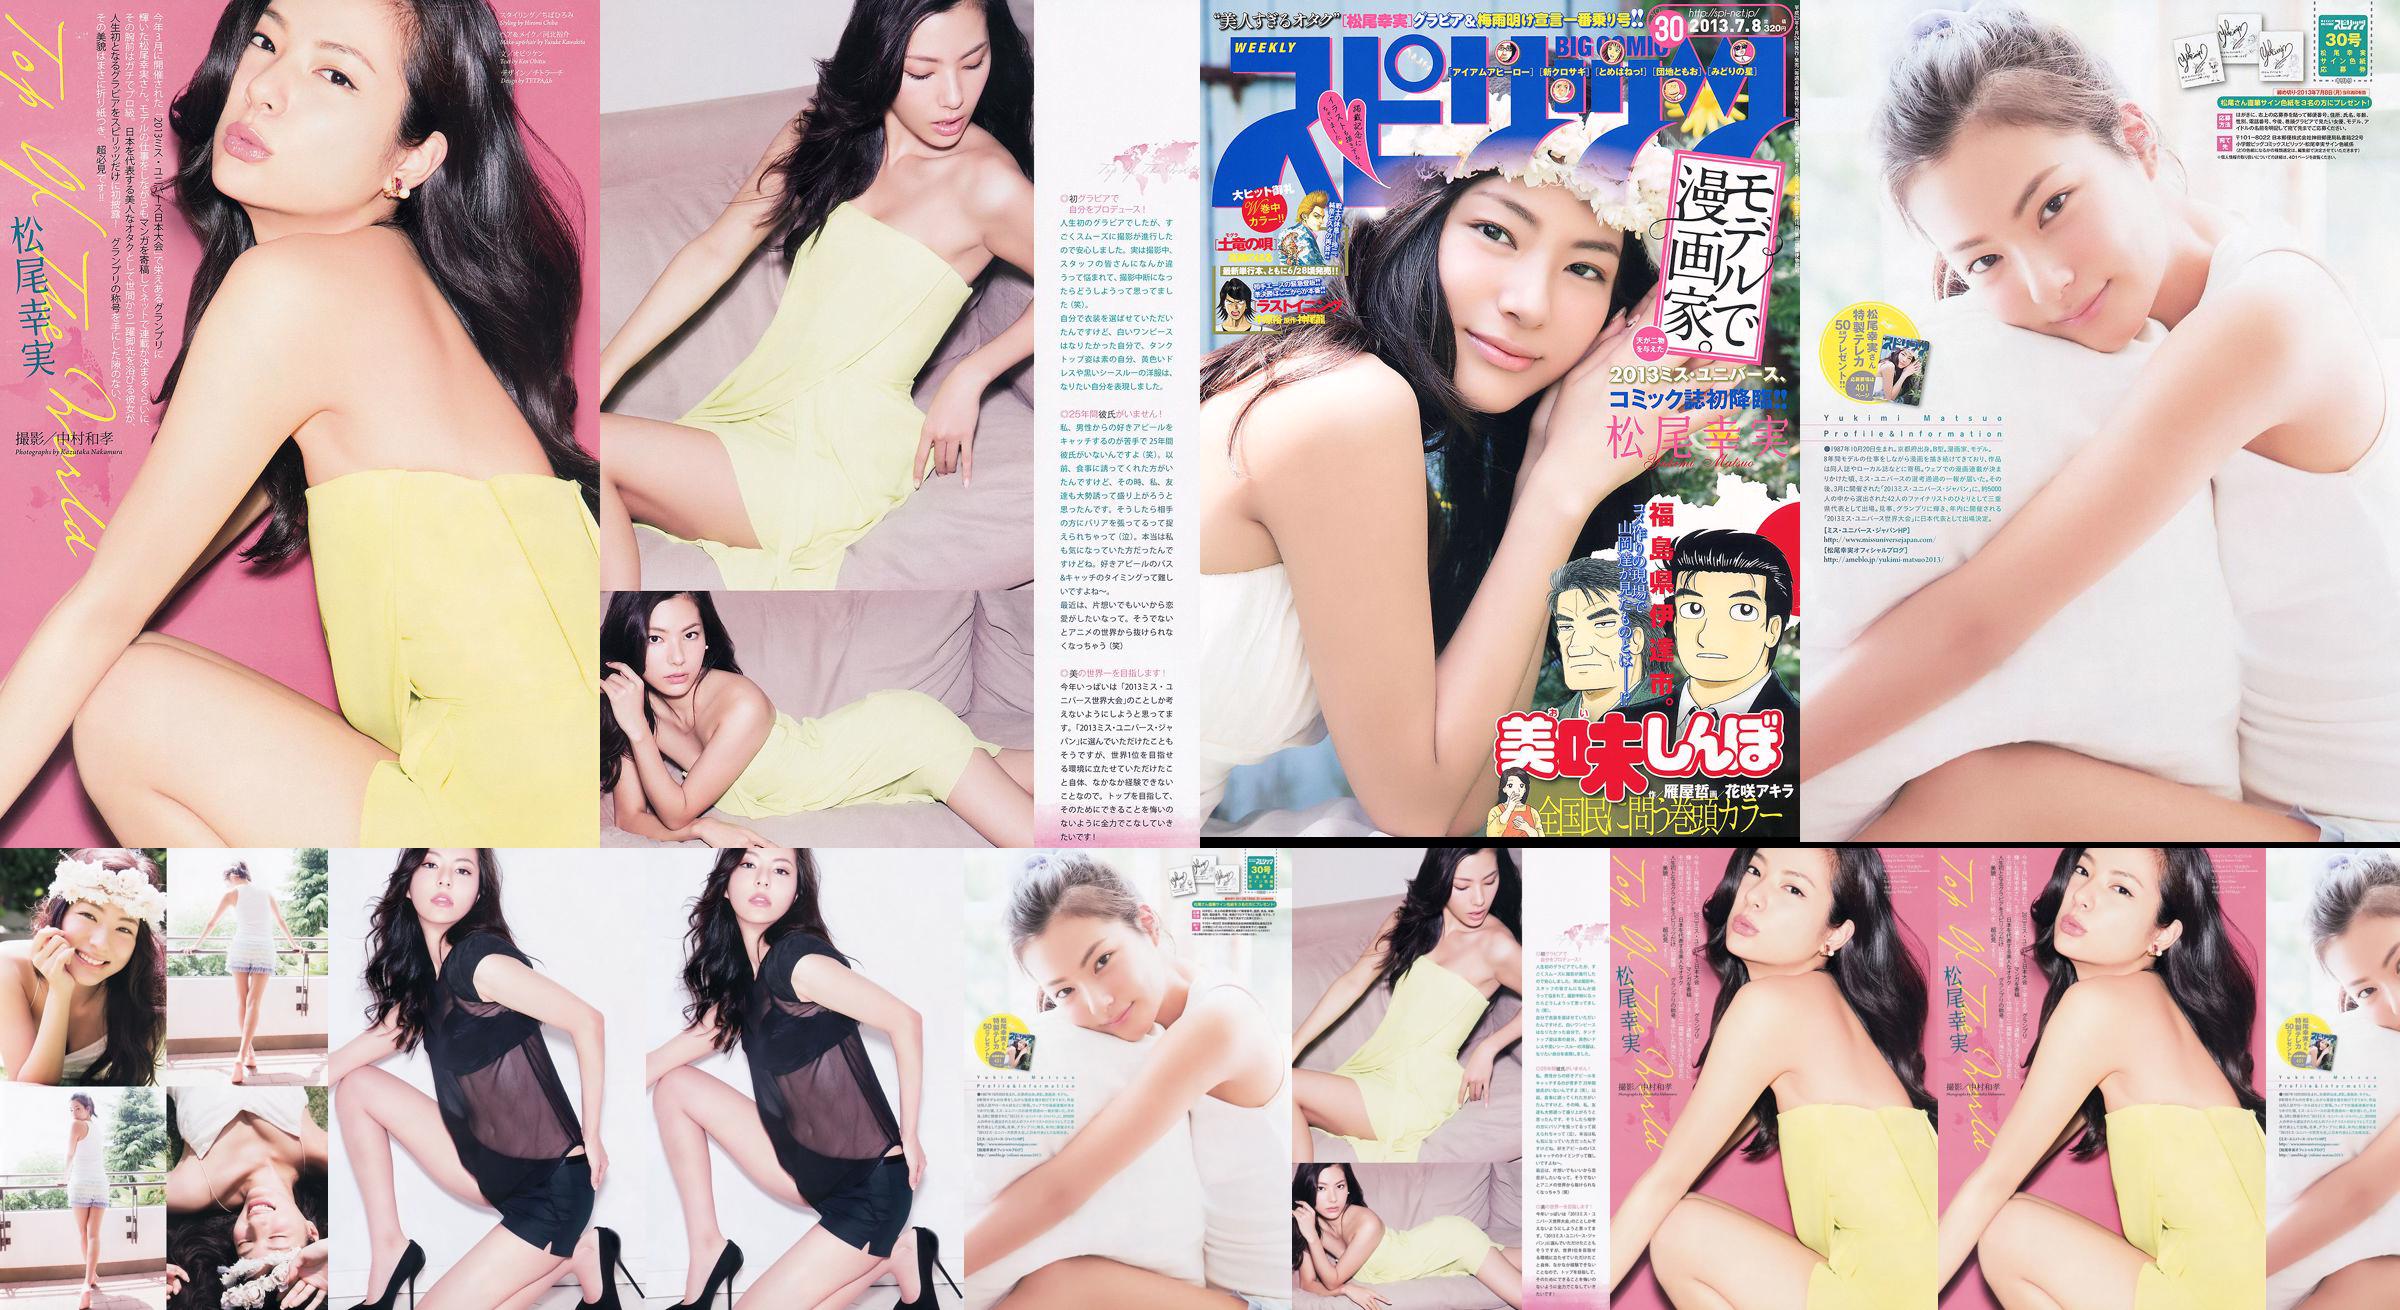 [Weekly Big Comic Spirits] Komi Matsuo 2013 No.30 Photo Magazine No.70bdd7 Pagina 2